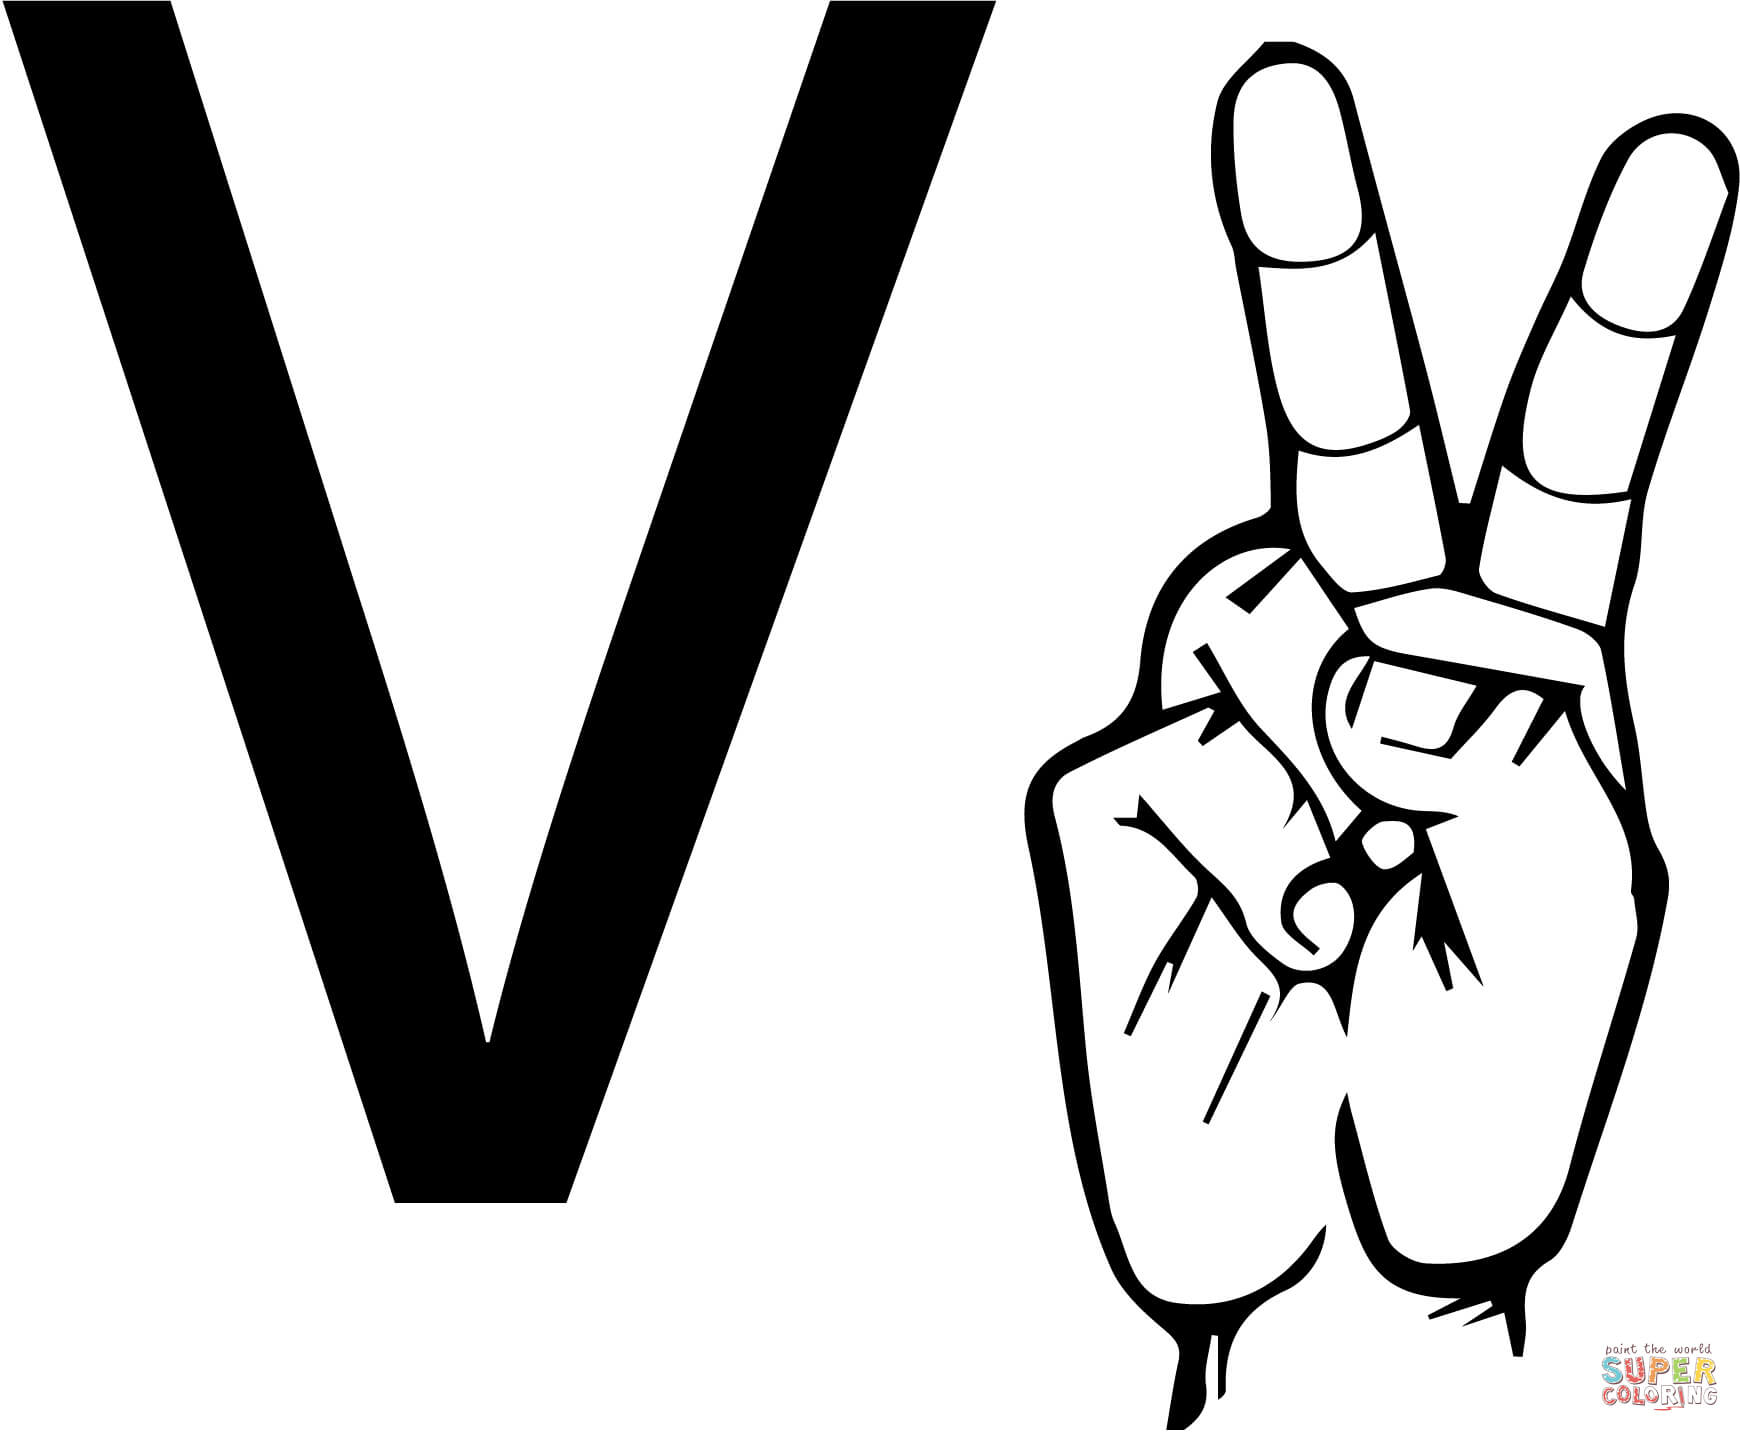 ASL-Gebärdensprache Buchstabe V aus Buchstabe V